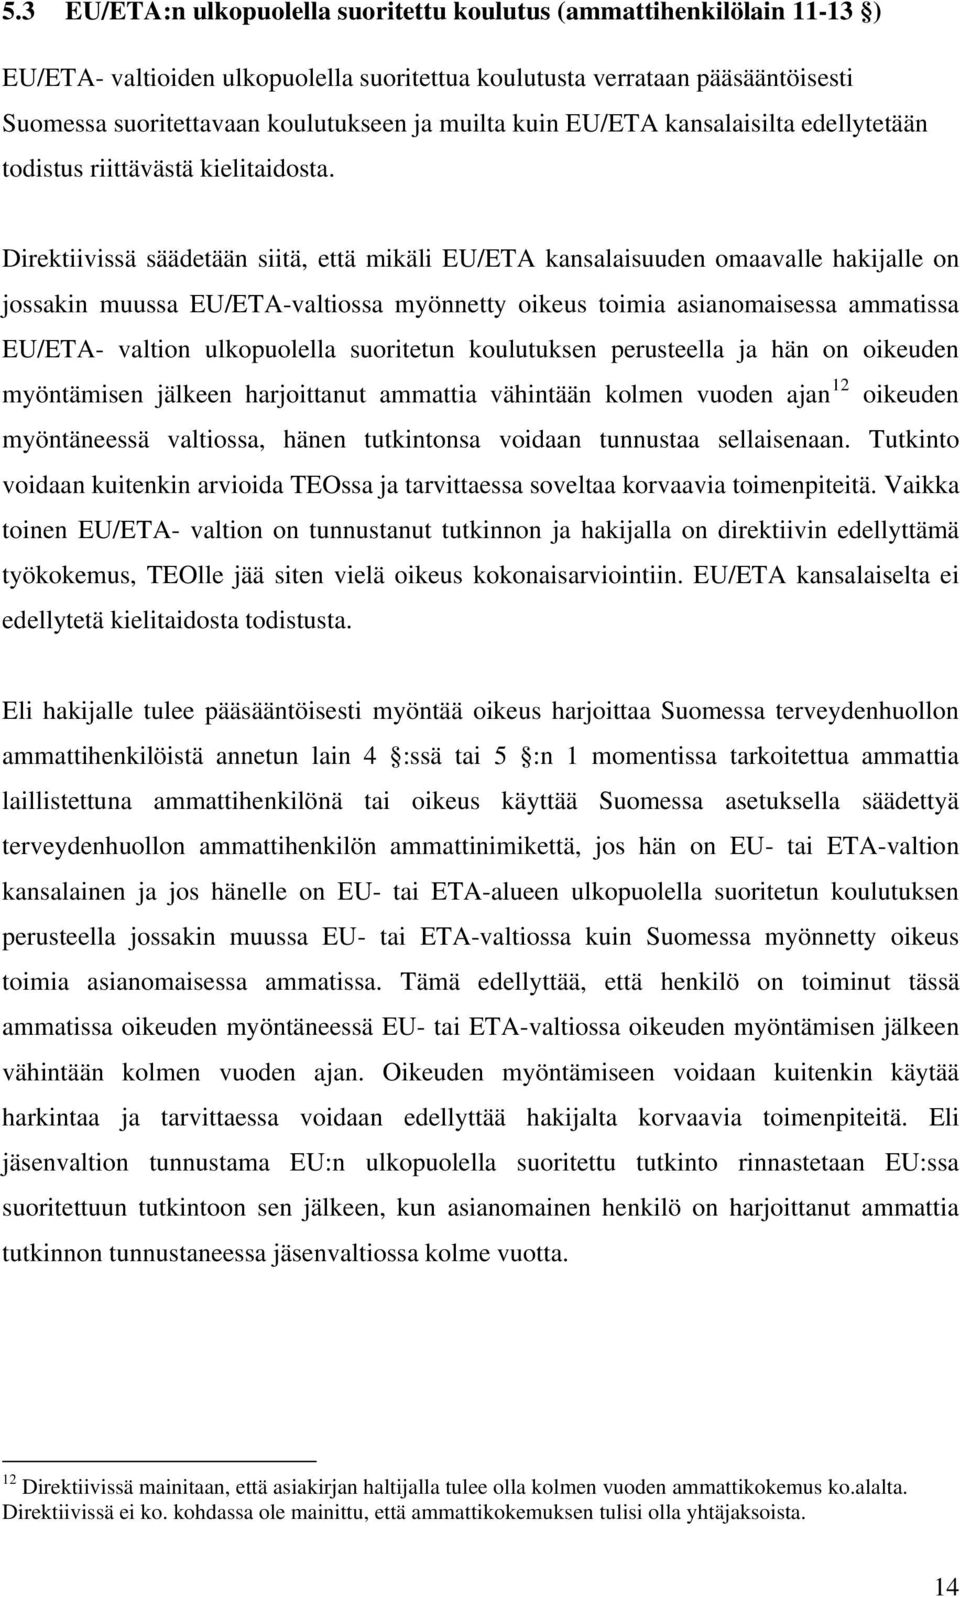 Direktiivissä säädetään siitä, että mikäli EU/ETA kansalaisuuden omaavalle hakijalle on jossakin muussa EU/ETA-valtiossa myönnetty oikeus toimia asianomaisessa ammatissa EU/ETA- valtion ulkopuolella